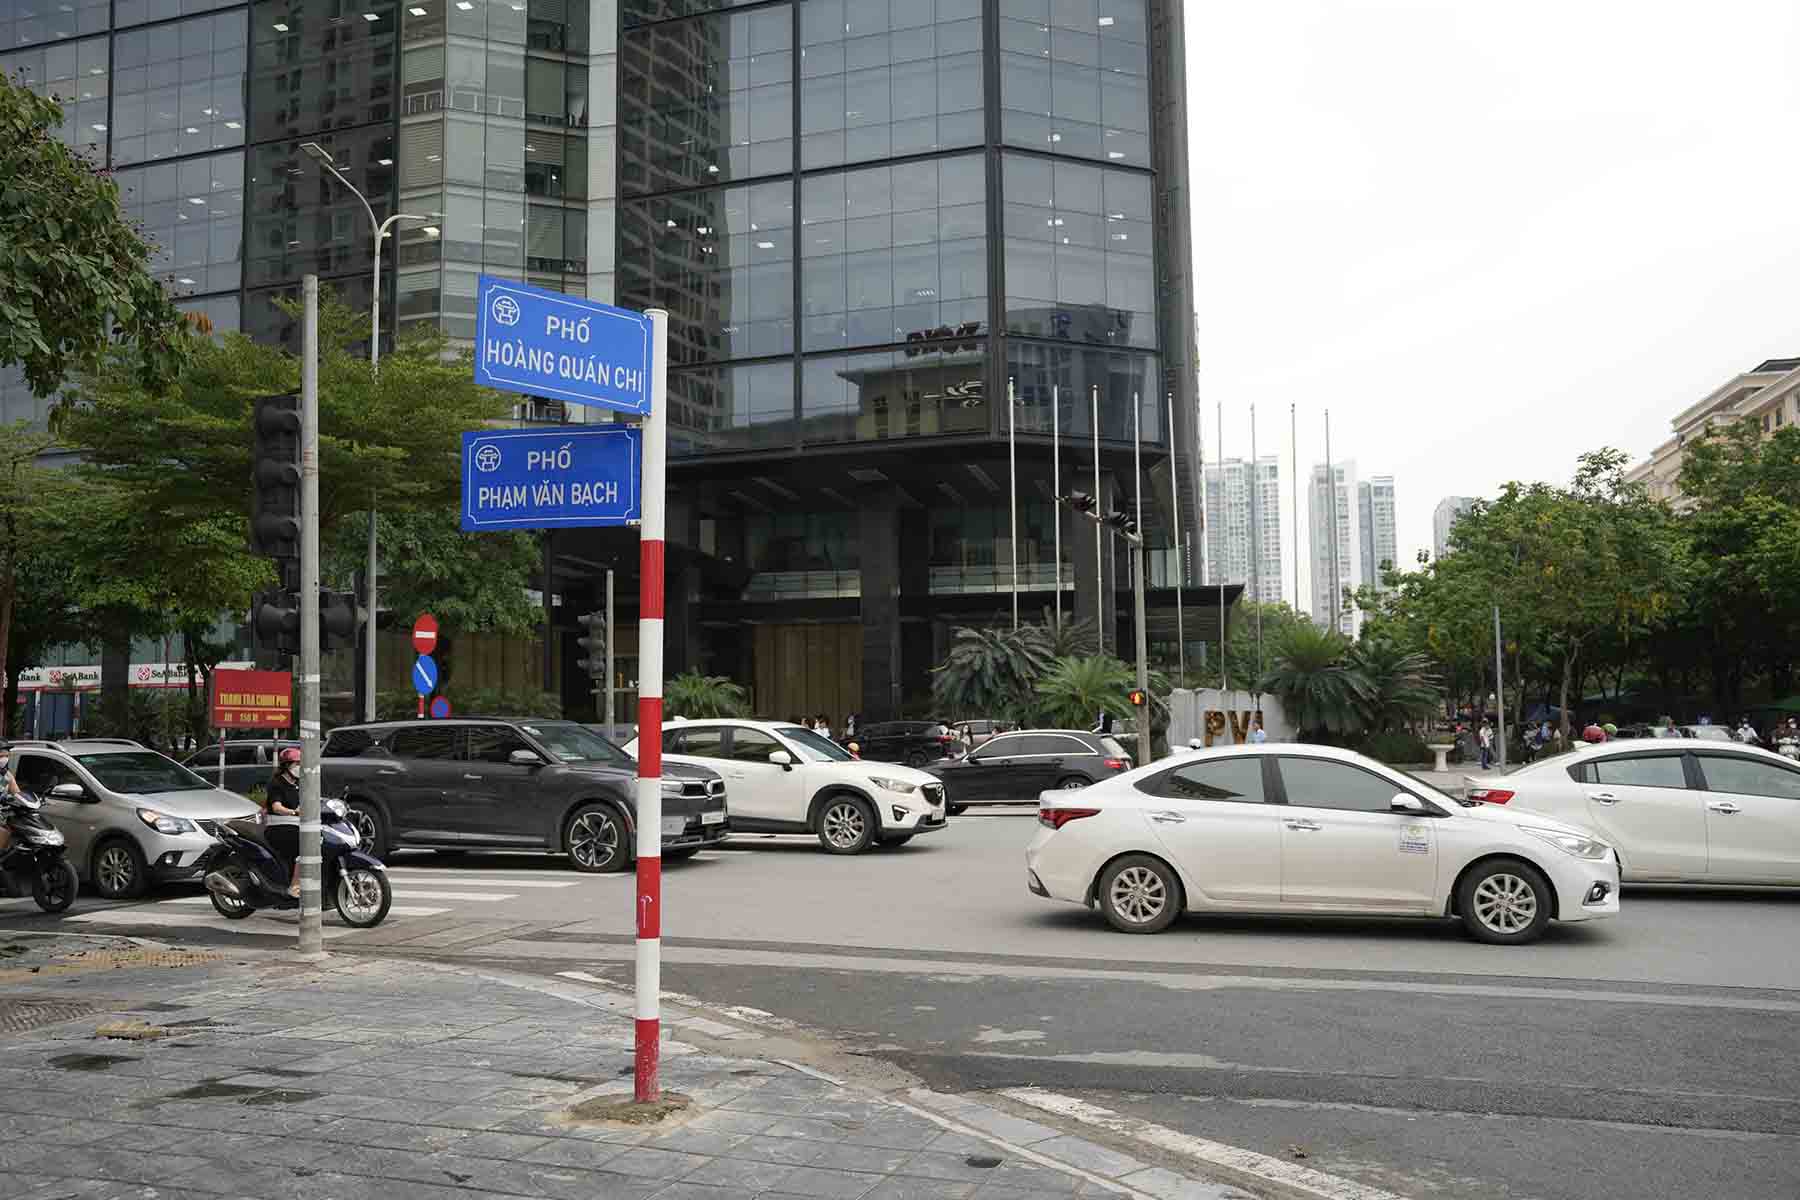 Nút giao phạm Phạm Văn Bạch - Hoàng Quán Chi và nút giao ngõ 9 được Sở Giao thông Vận tải Hà Nội chọn thí điểm hệ thống giao thông thông minh.